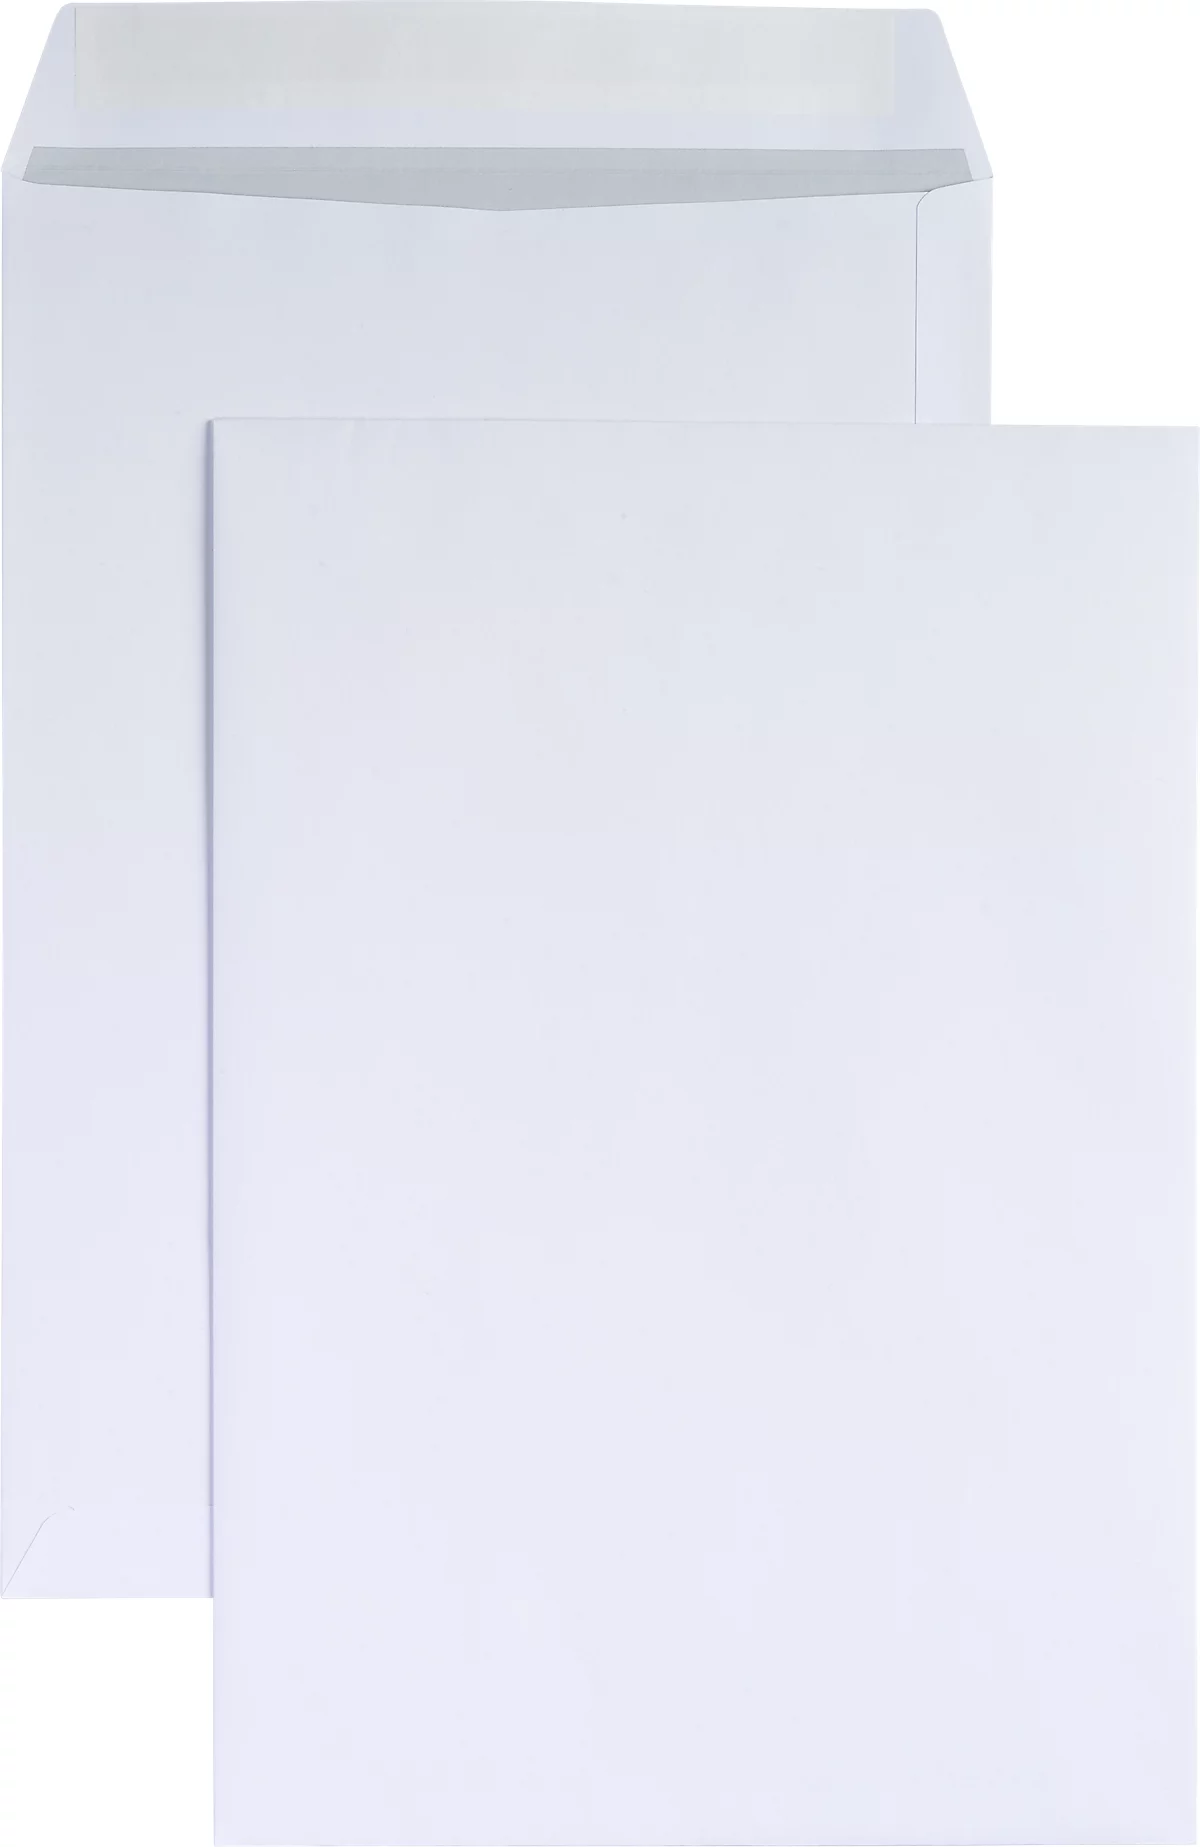 Schäfer Shop Genius Sacs d’expédition blanc B4,120 g/m², 250 p.